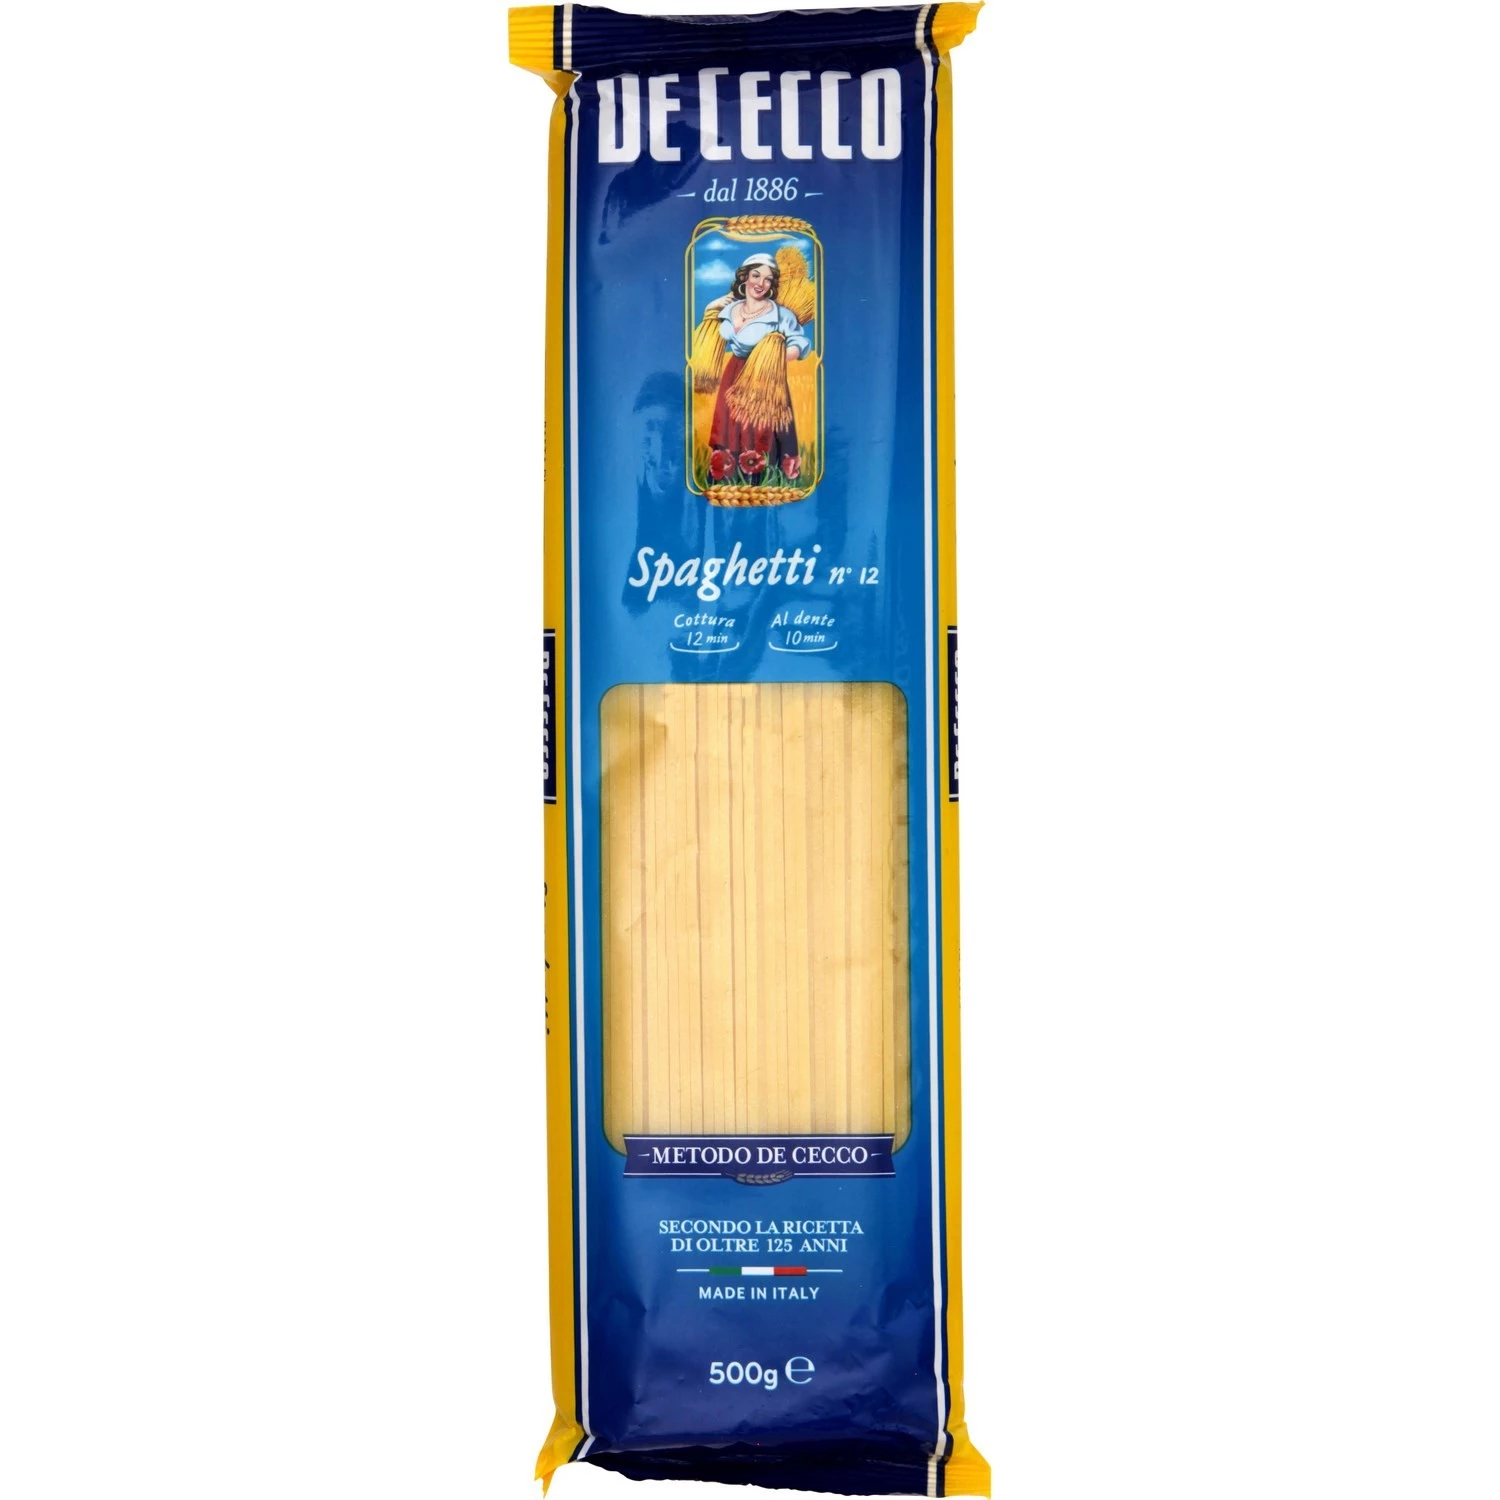 Spaghetti n°12 500g - DE CECCO